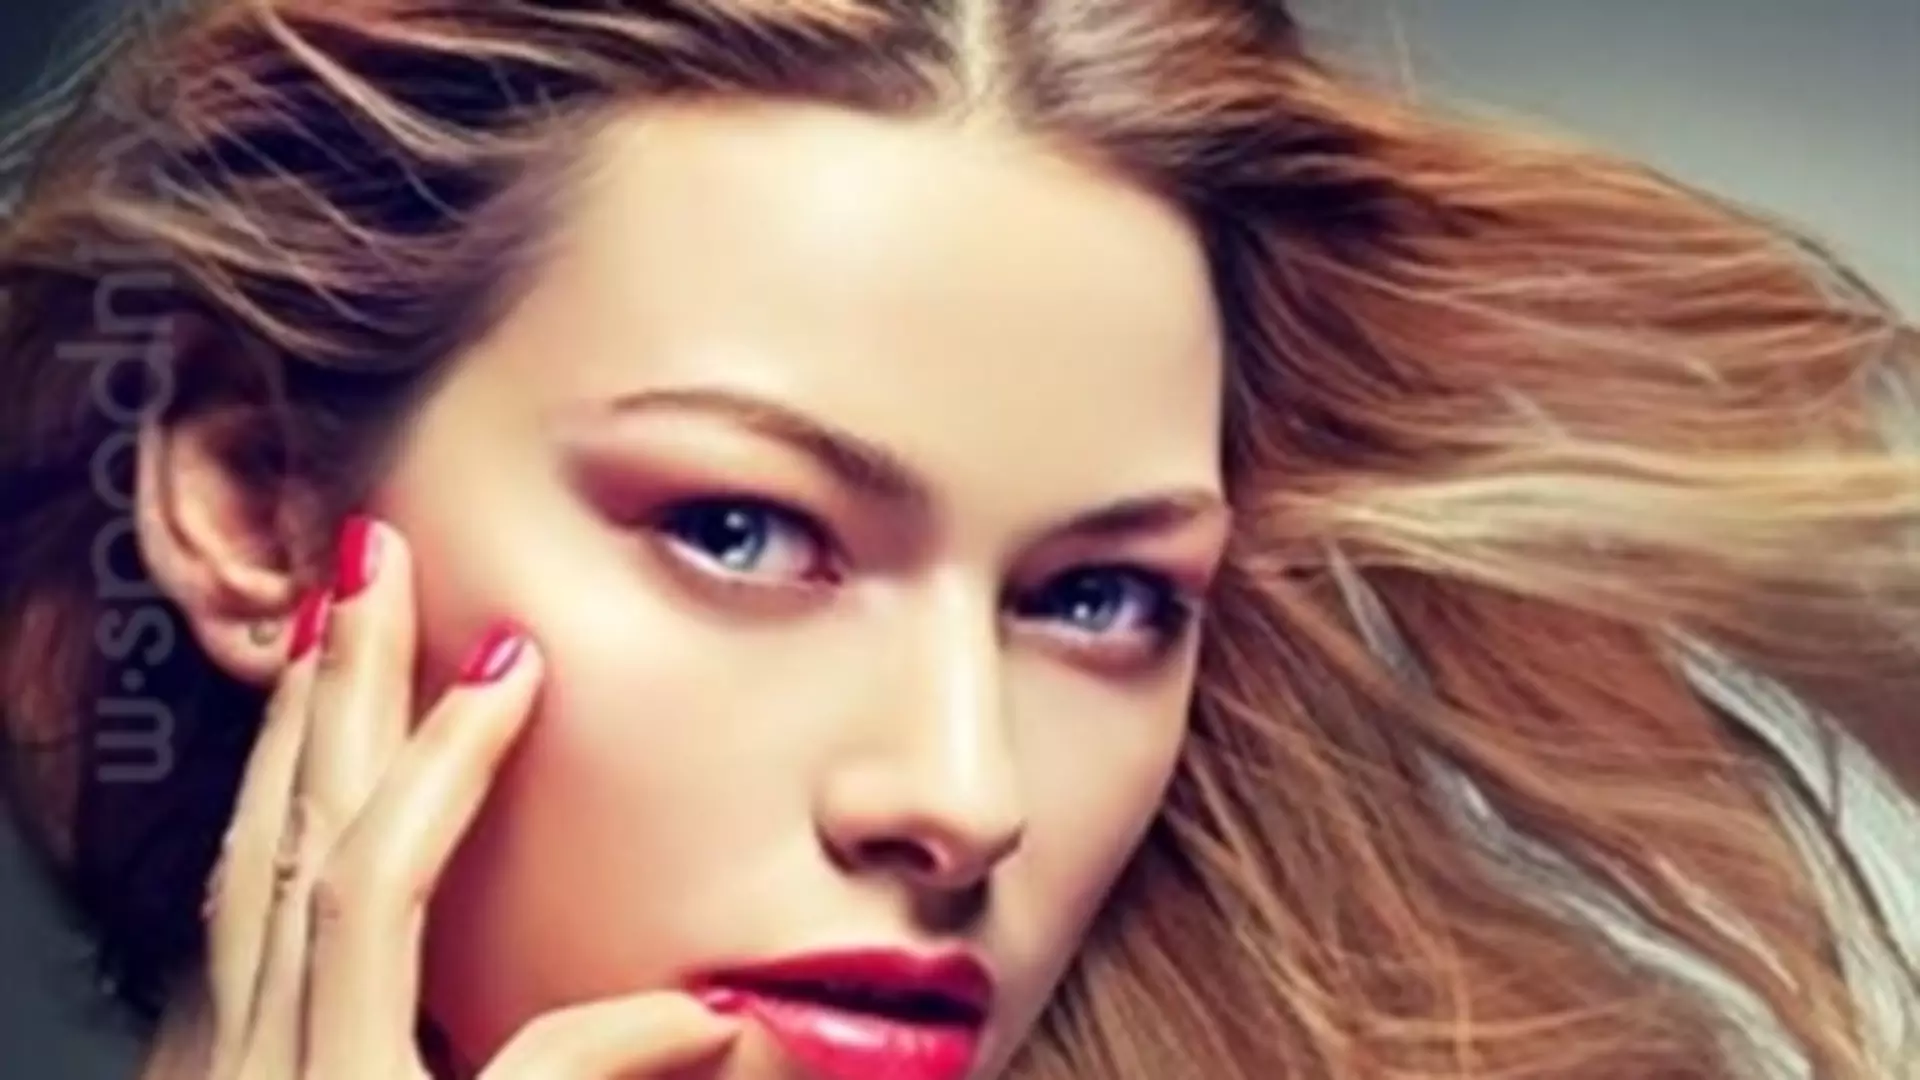 Czarodziejski makijaż: jak optycznie powiększyć małe oczy?